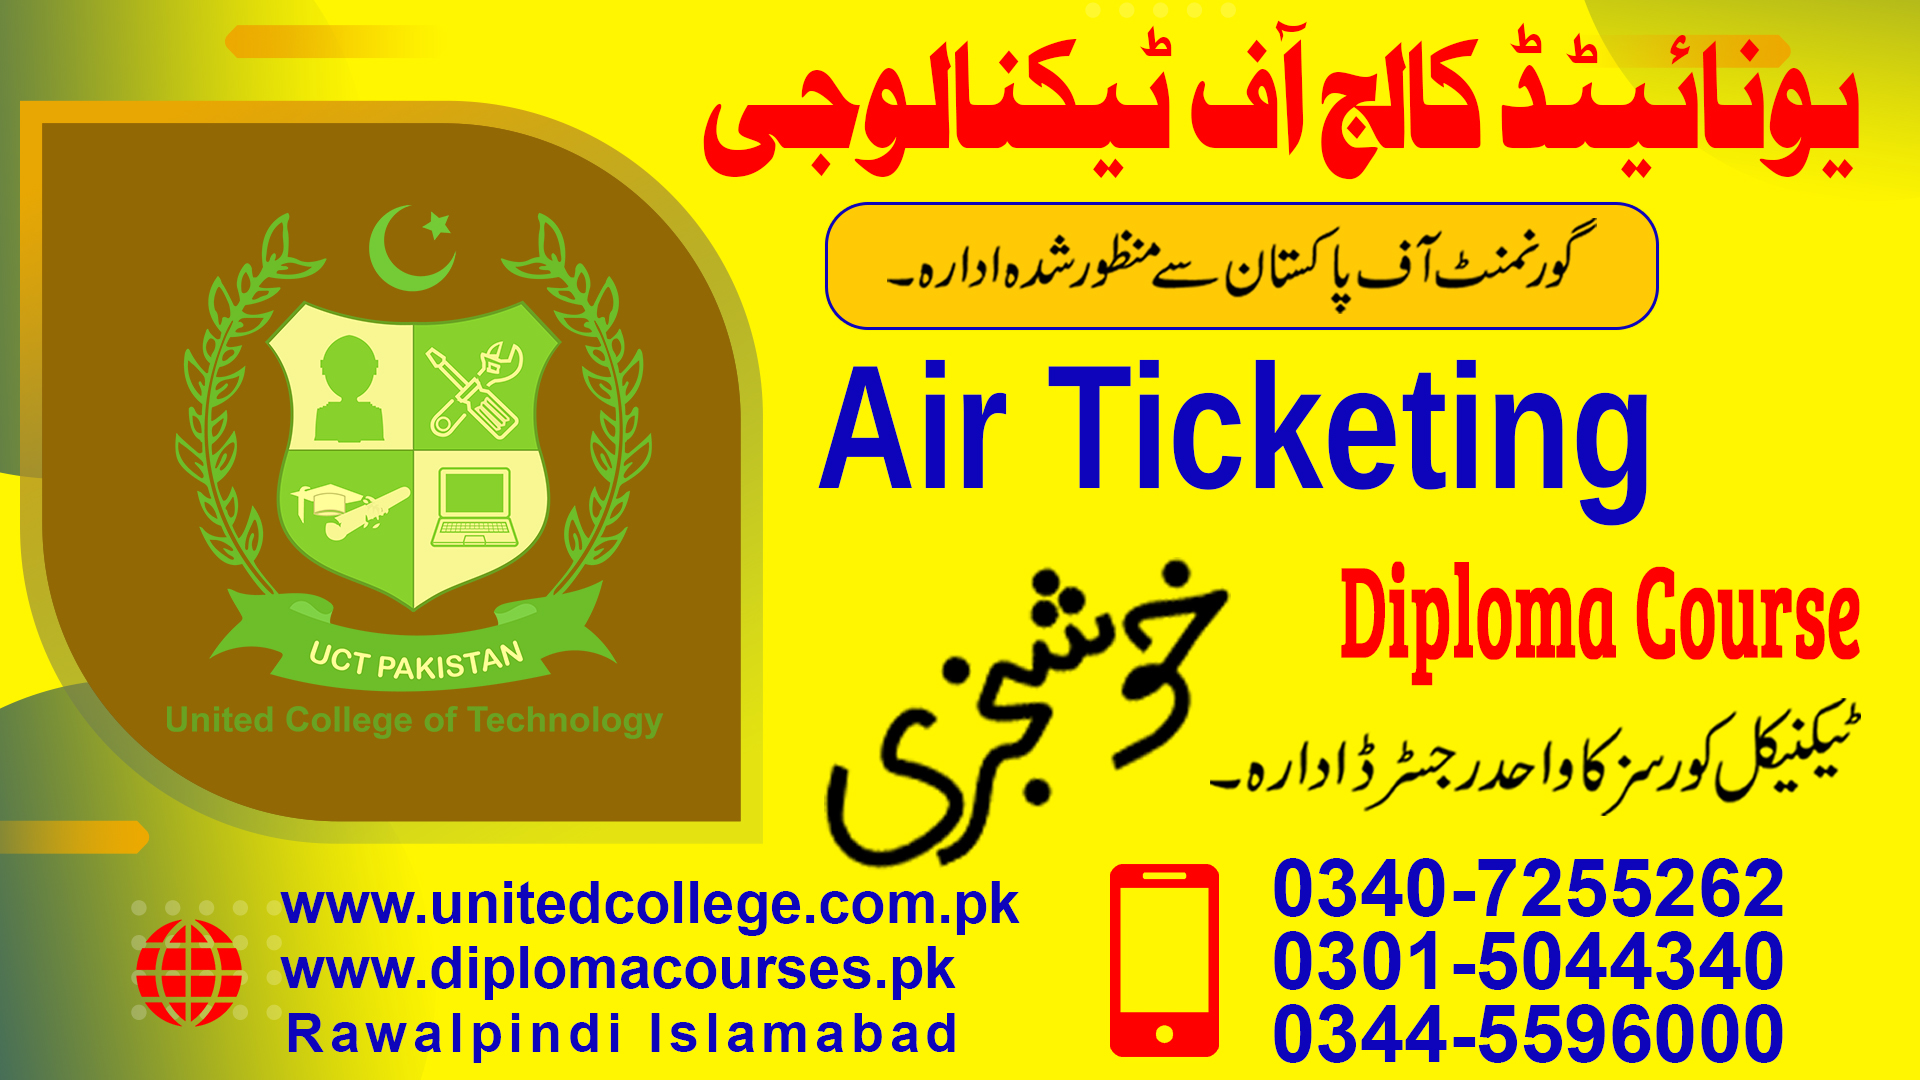 AIR TICKETING COURSE IN RAWALPINDI ISLAMABAD PAKISTAN